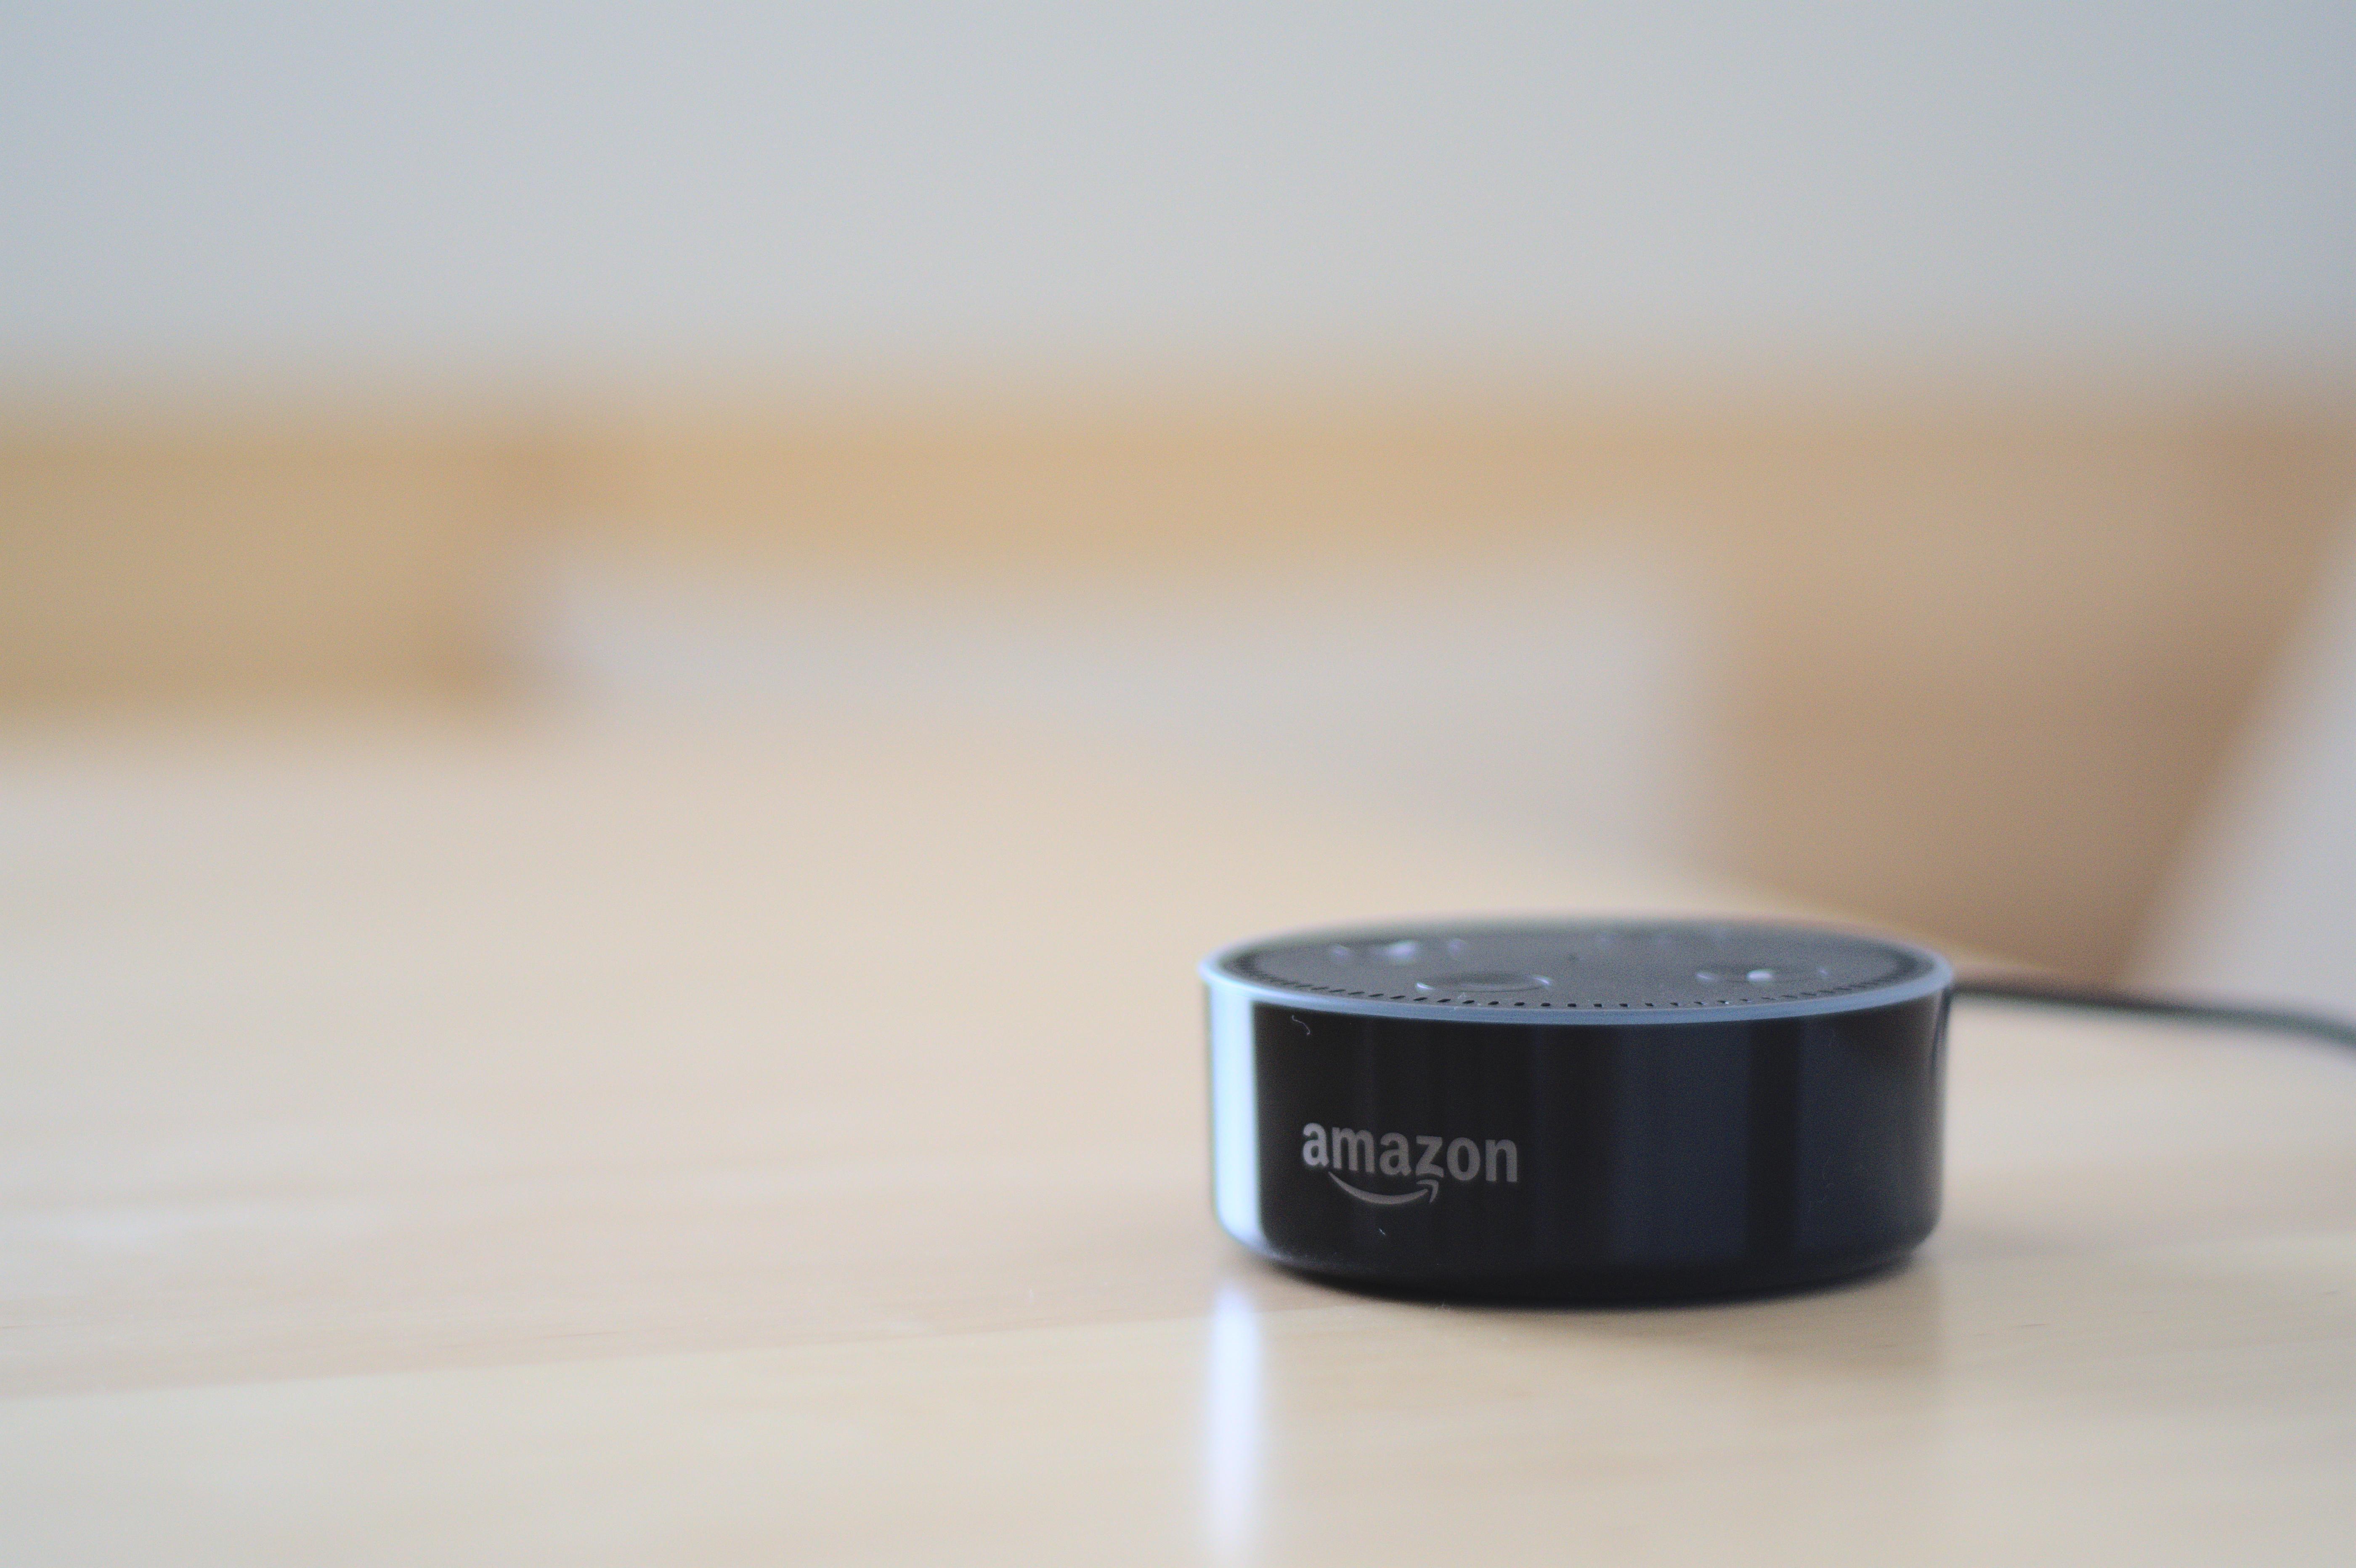   Der Flüstermodus funktioniert mit allen Alexa-Lautsprechern, einschließlich der Amazon Echo Dot